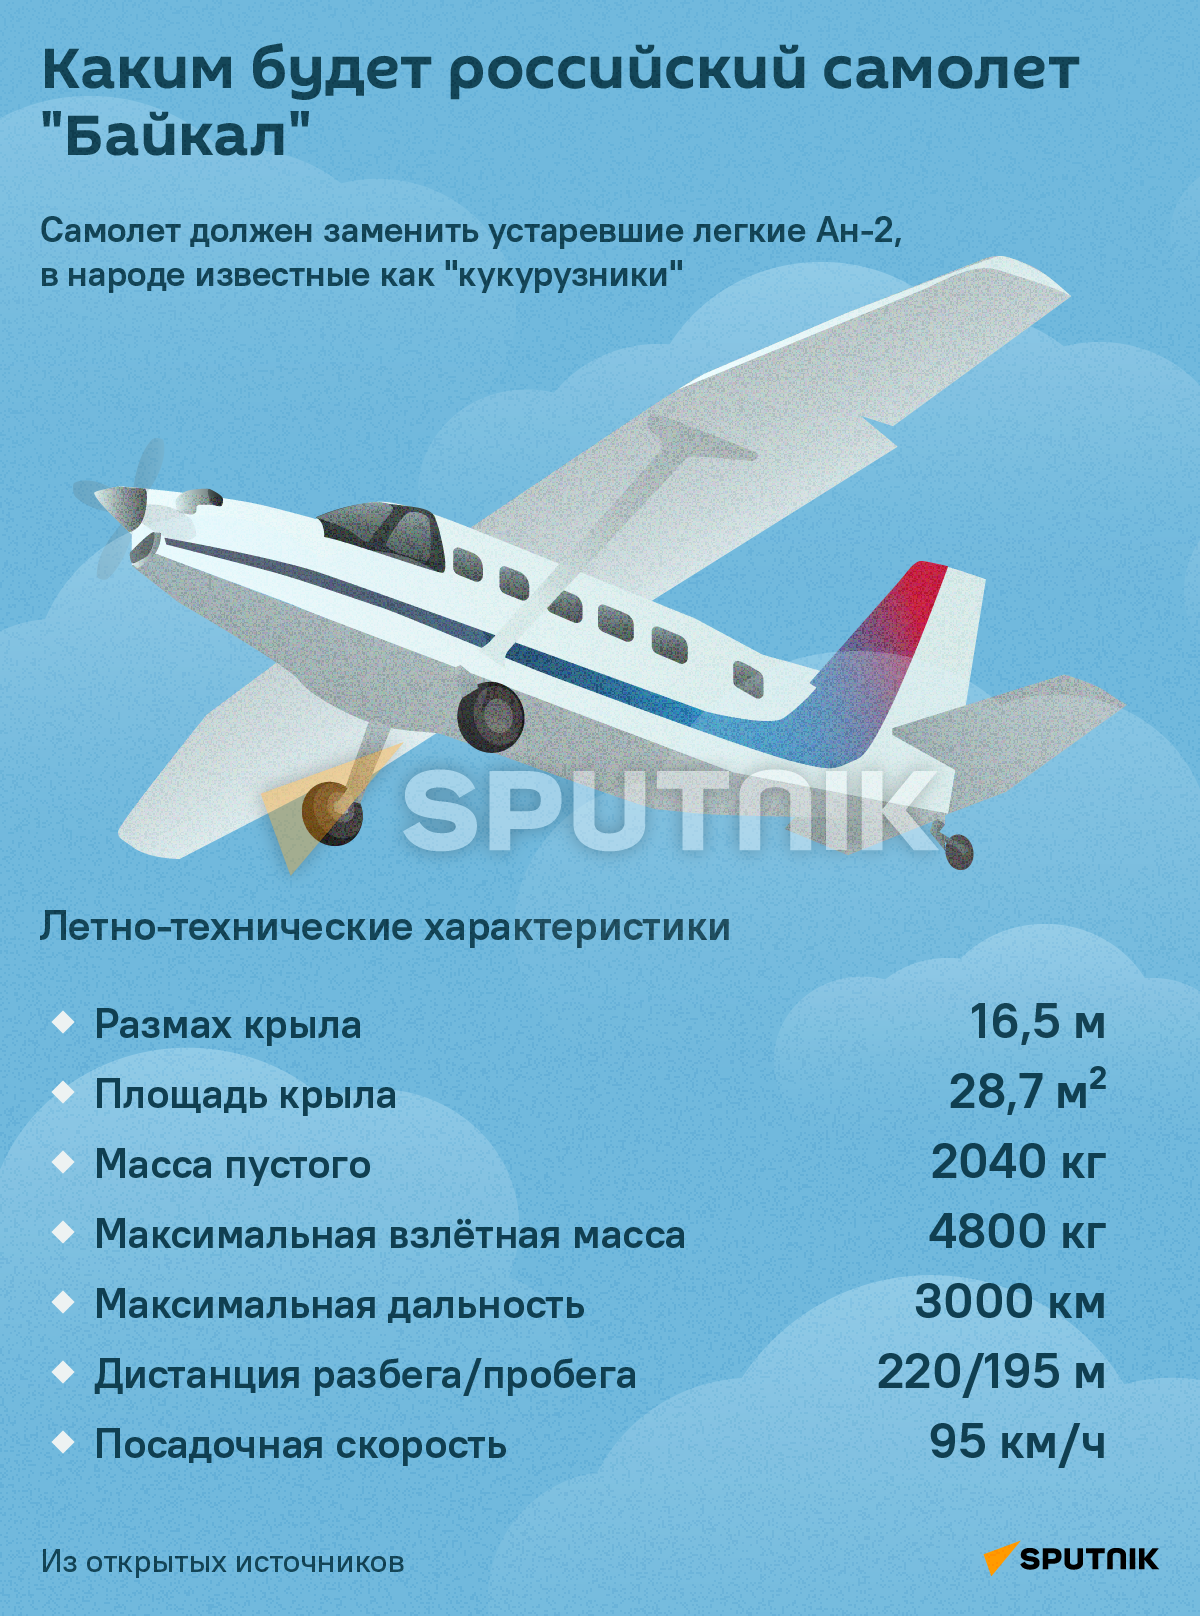 Самолет Байкал - Sputnik Казахстан